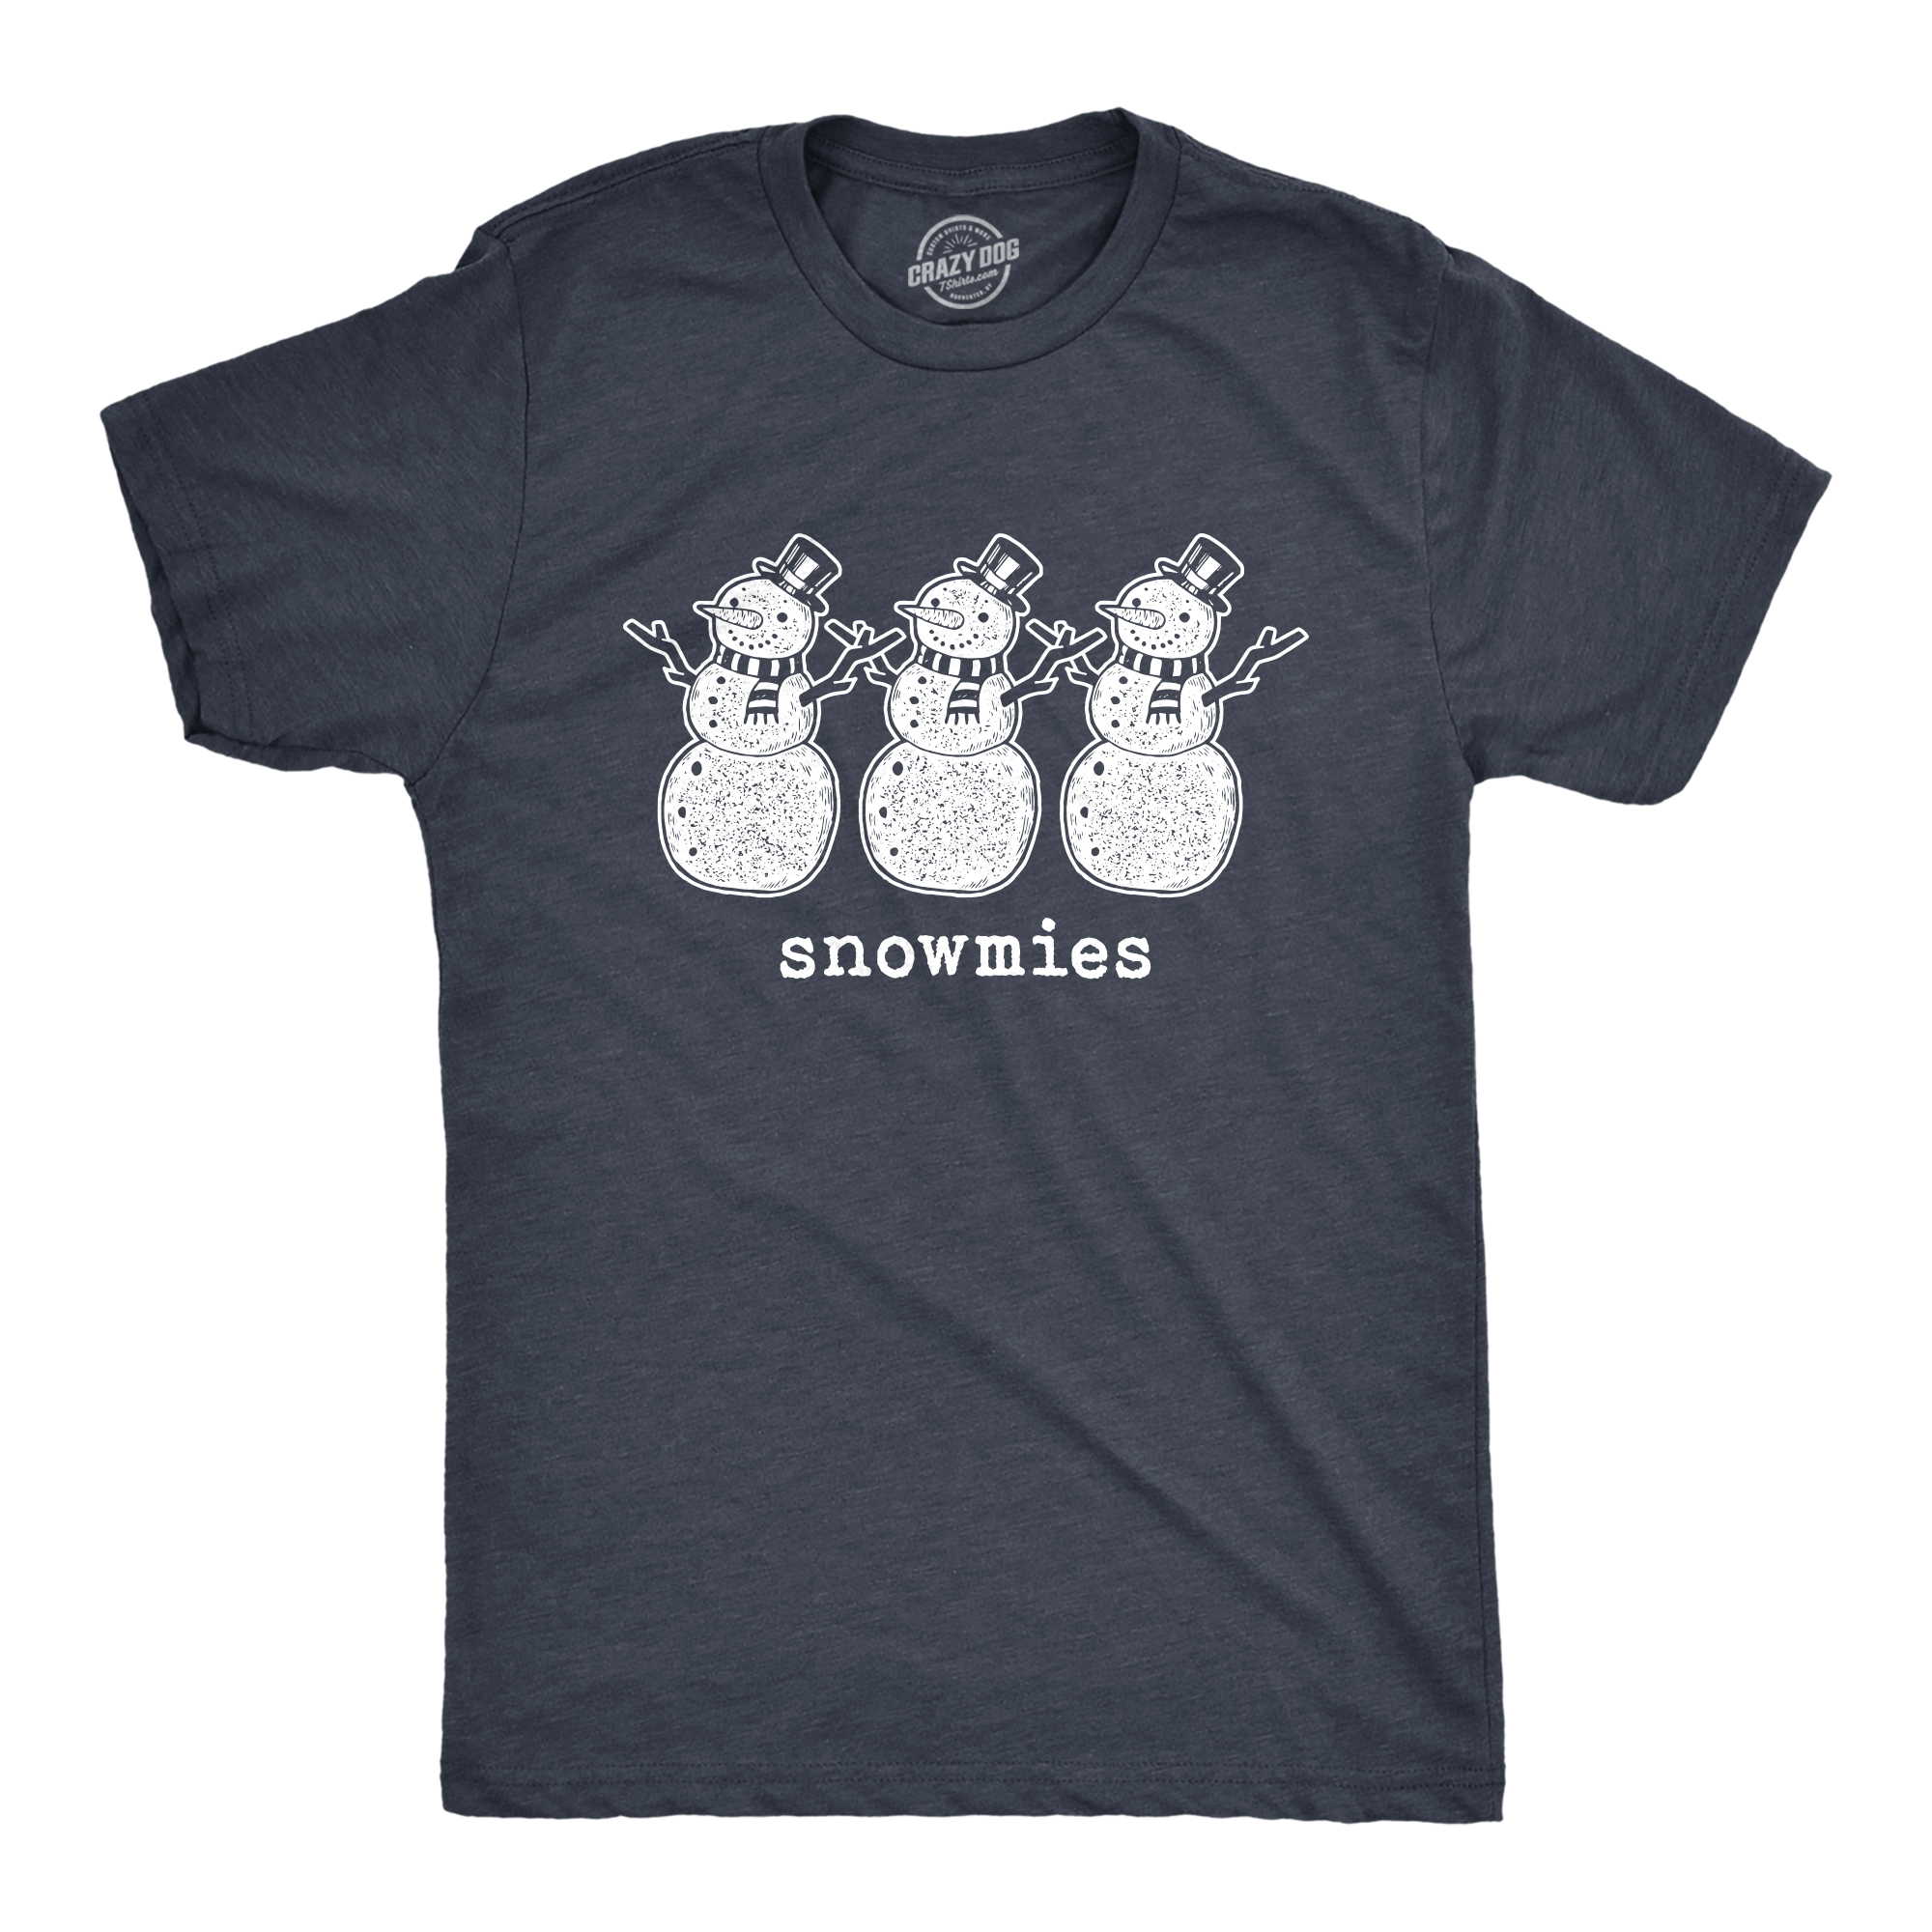 Crazy Dog Tshirts Mens Snowmies Tshirt Funny Snowmen Homies Friends Winter Season Graphic Tee